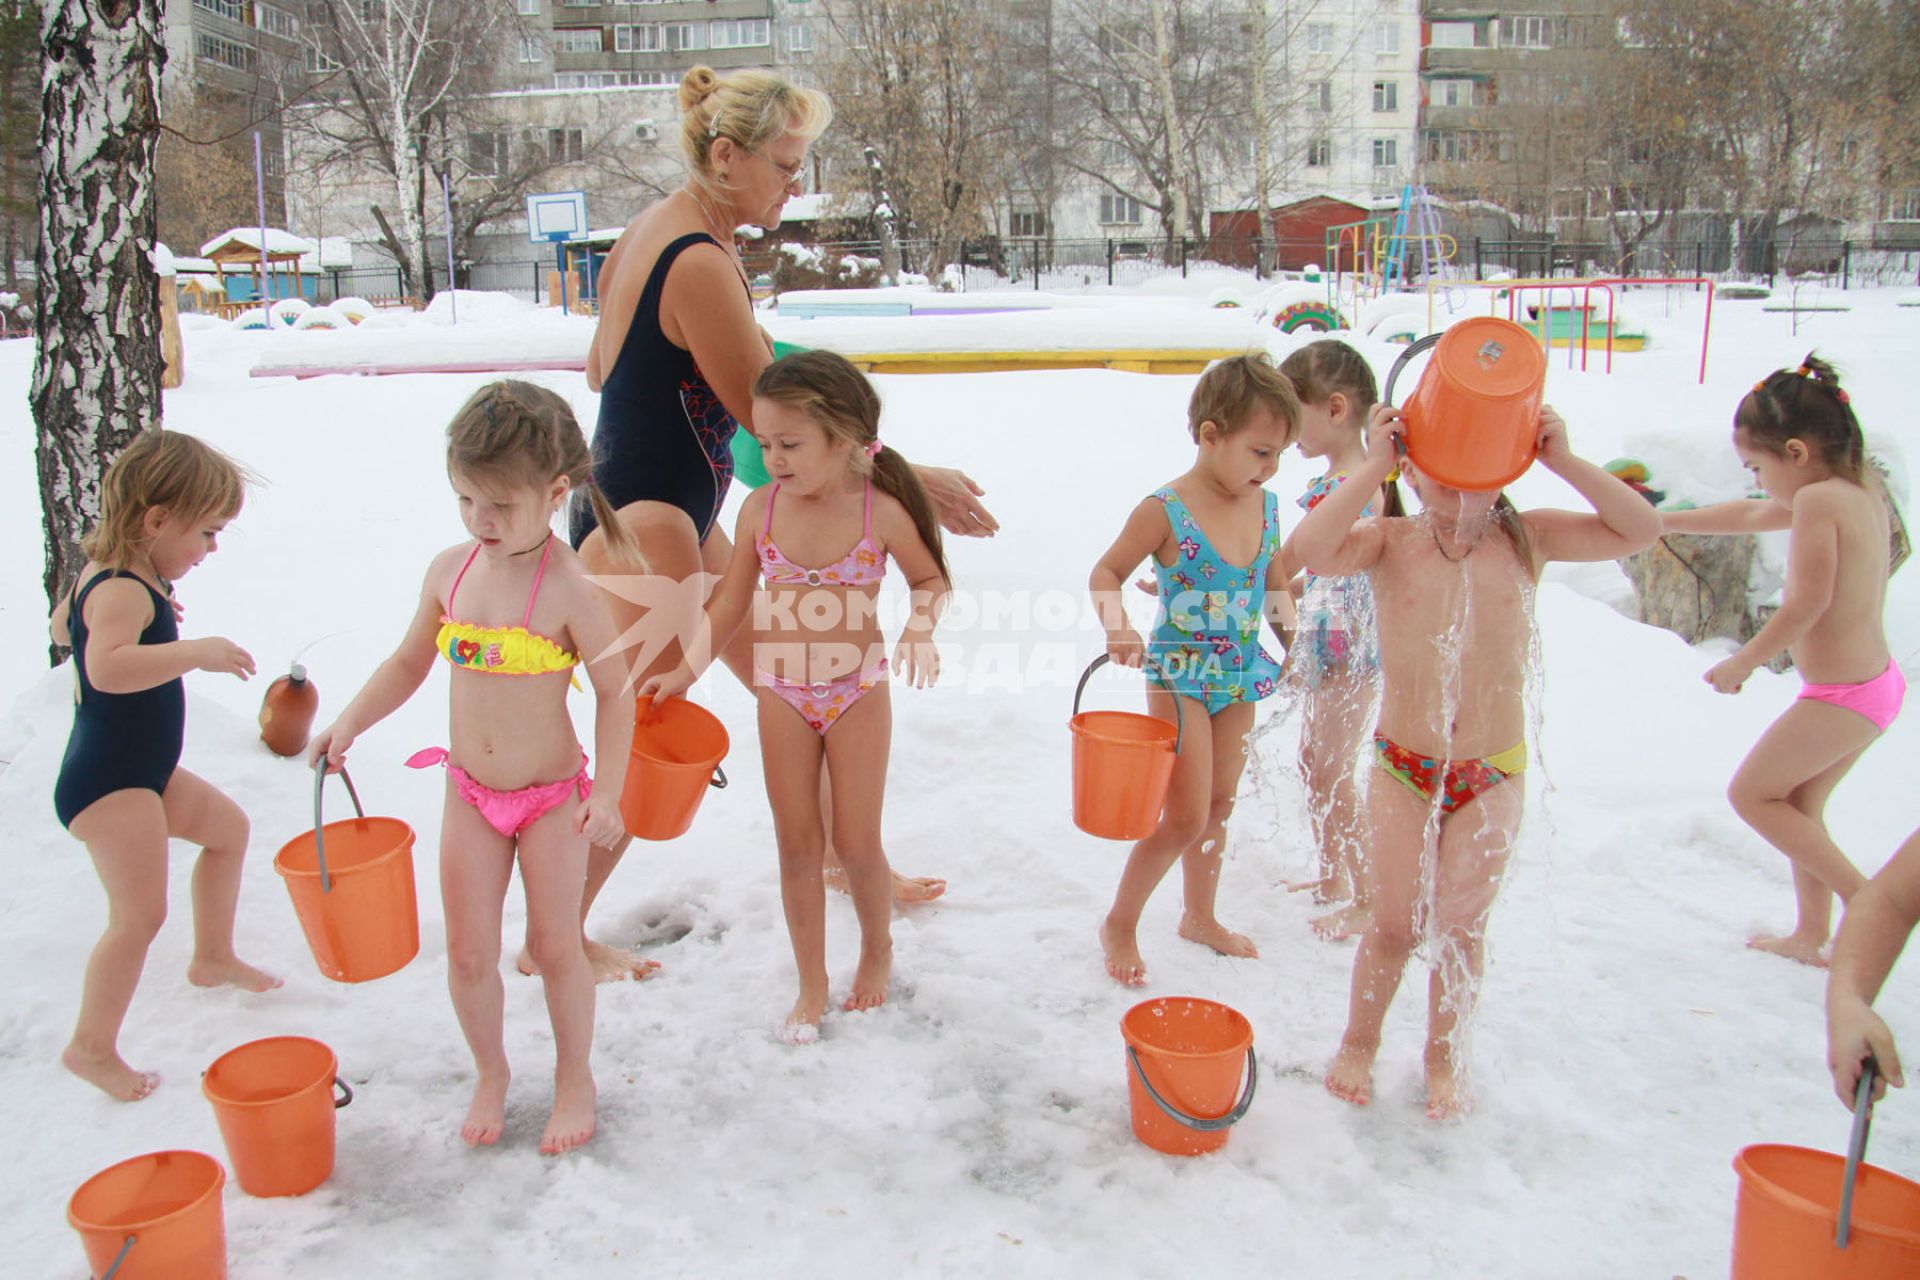 Закаливание в детском саду зимой. На снимке: дети обливаются водой на улице зимой.